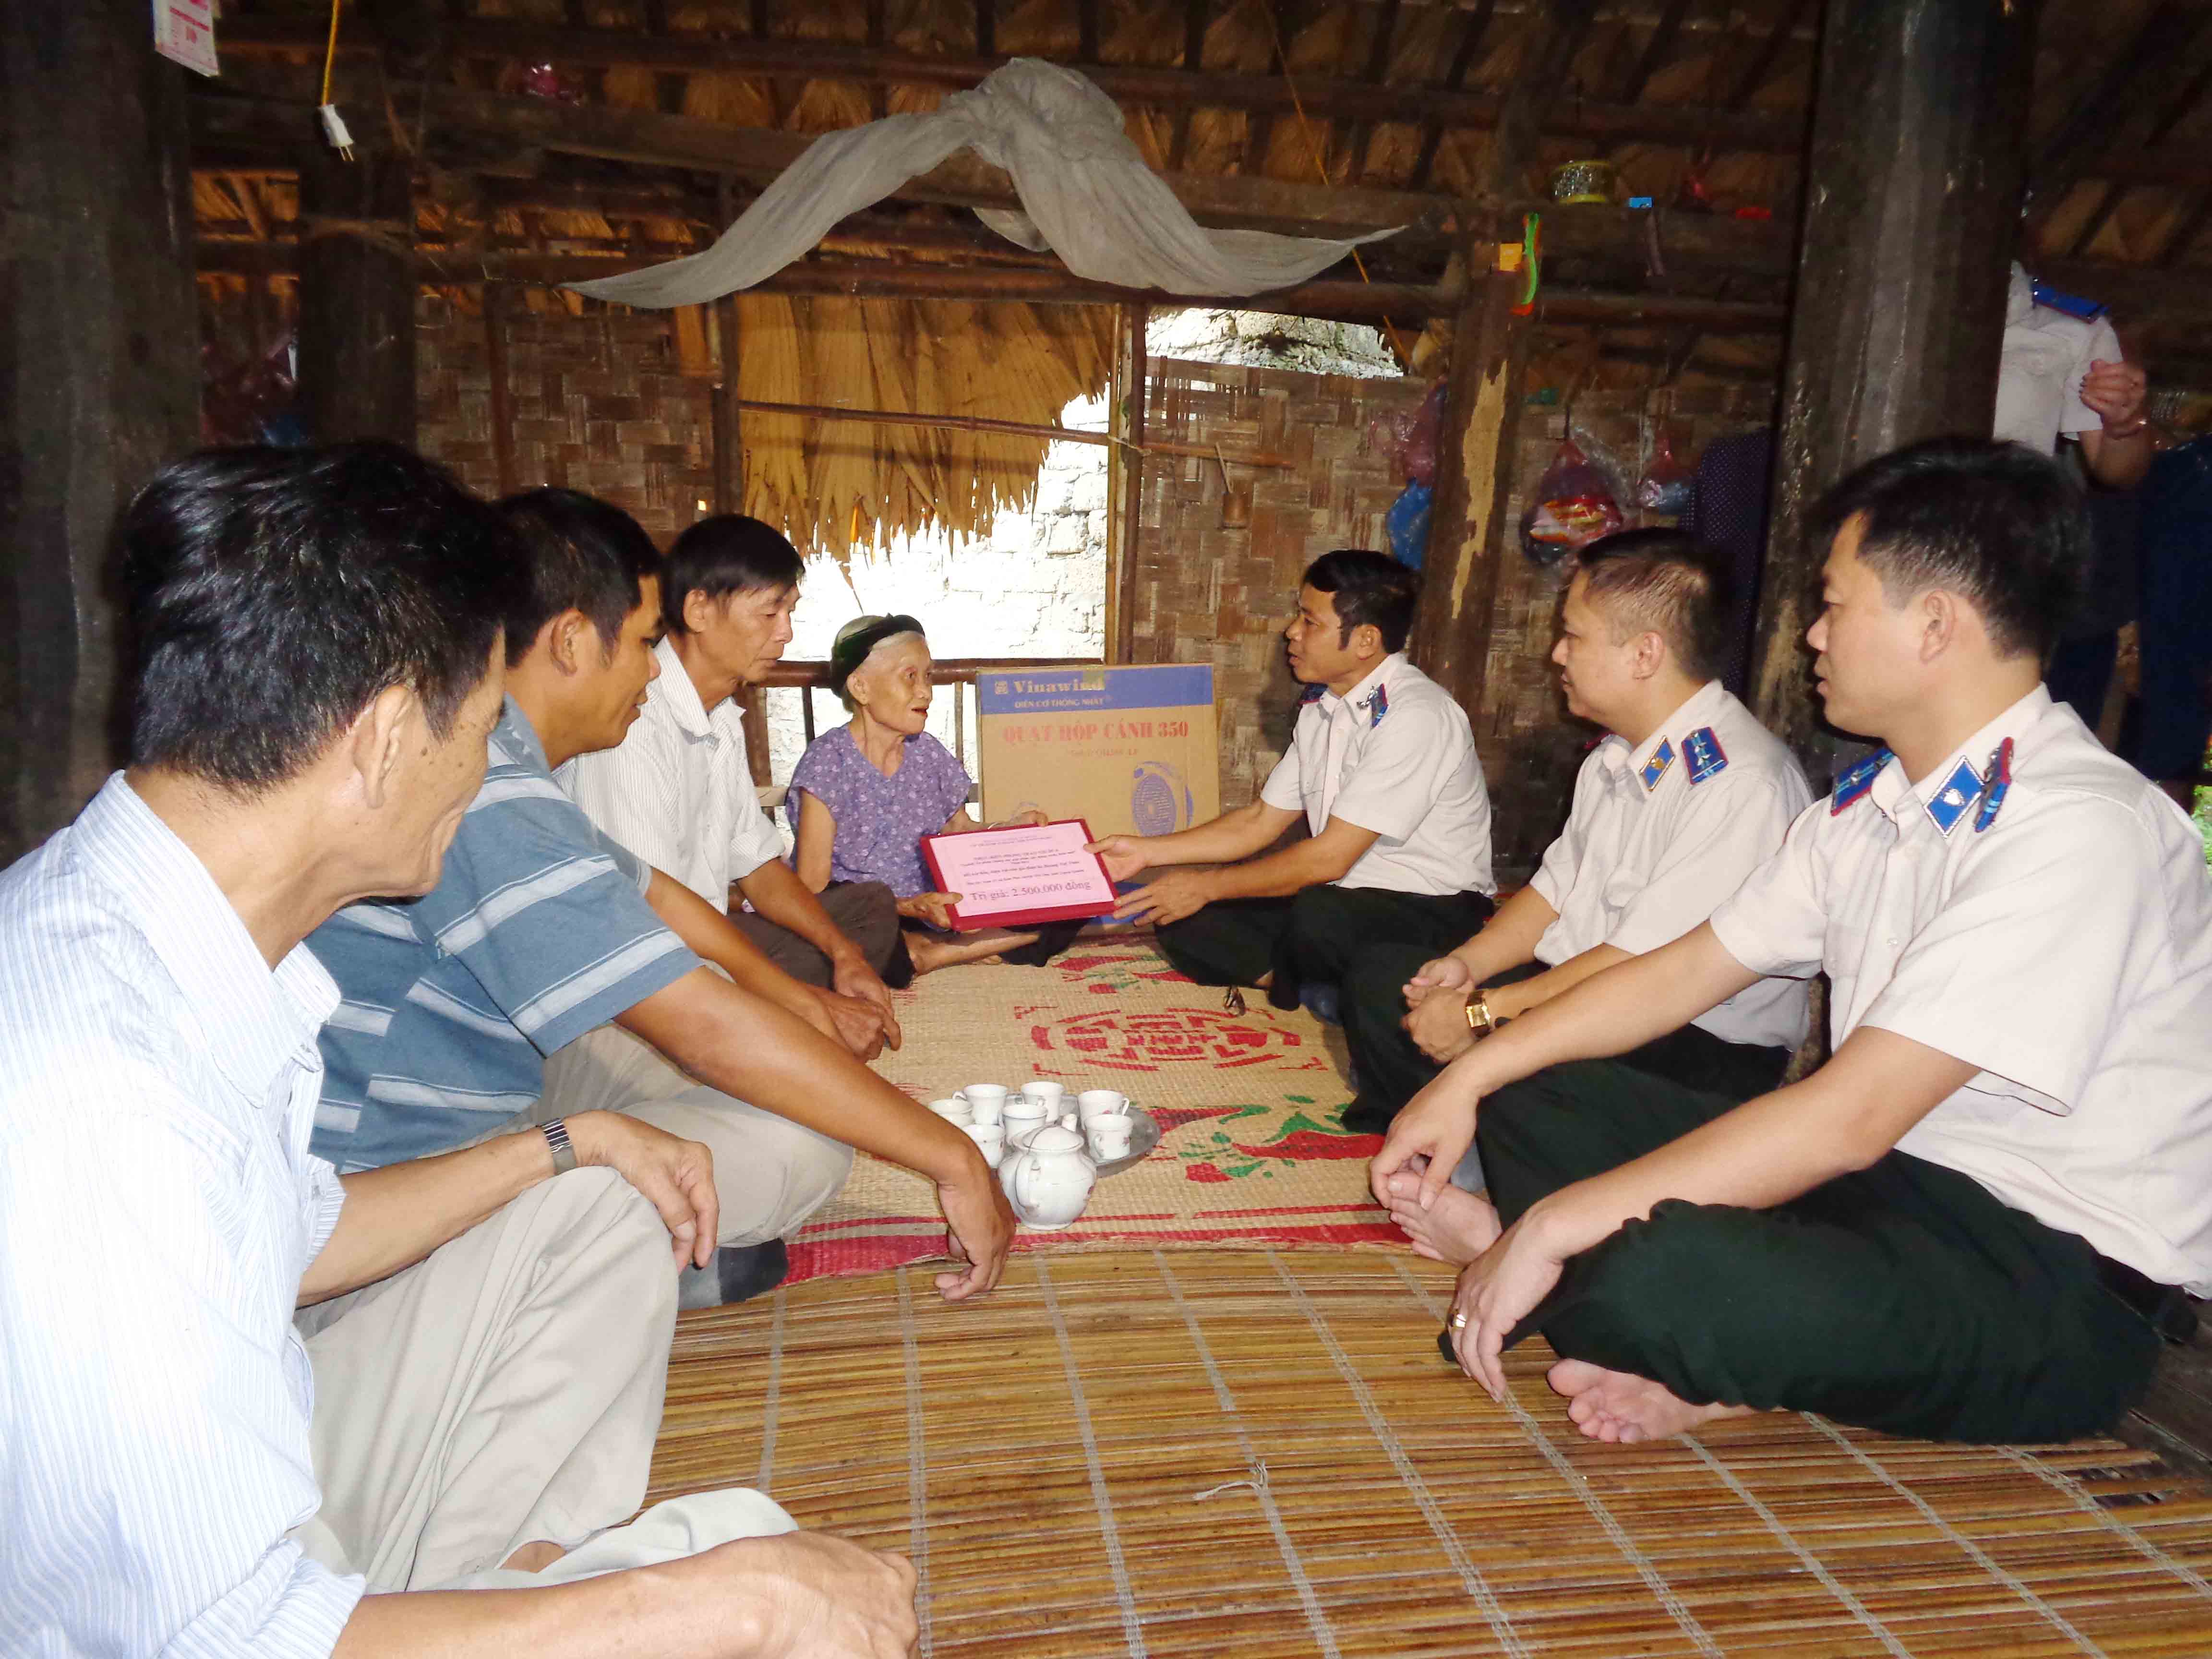 Cục Thi hành án dân sự tỉnh Tuyên Quang: Hỗ trợ 02 gia đình có hoàn cảnh đặc biệt khó khăn, góp phần “Chung sức xây dựng nông thôn mới”